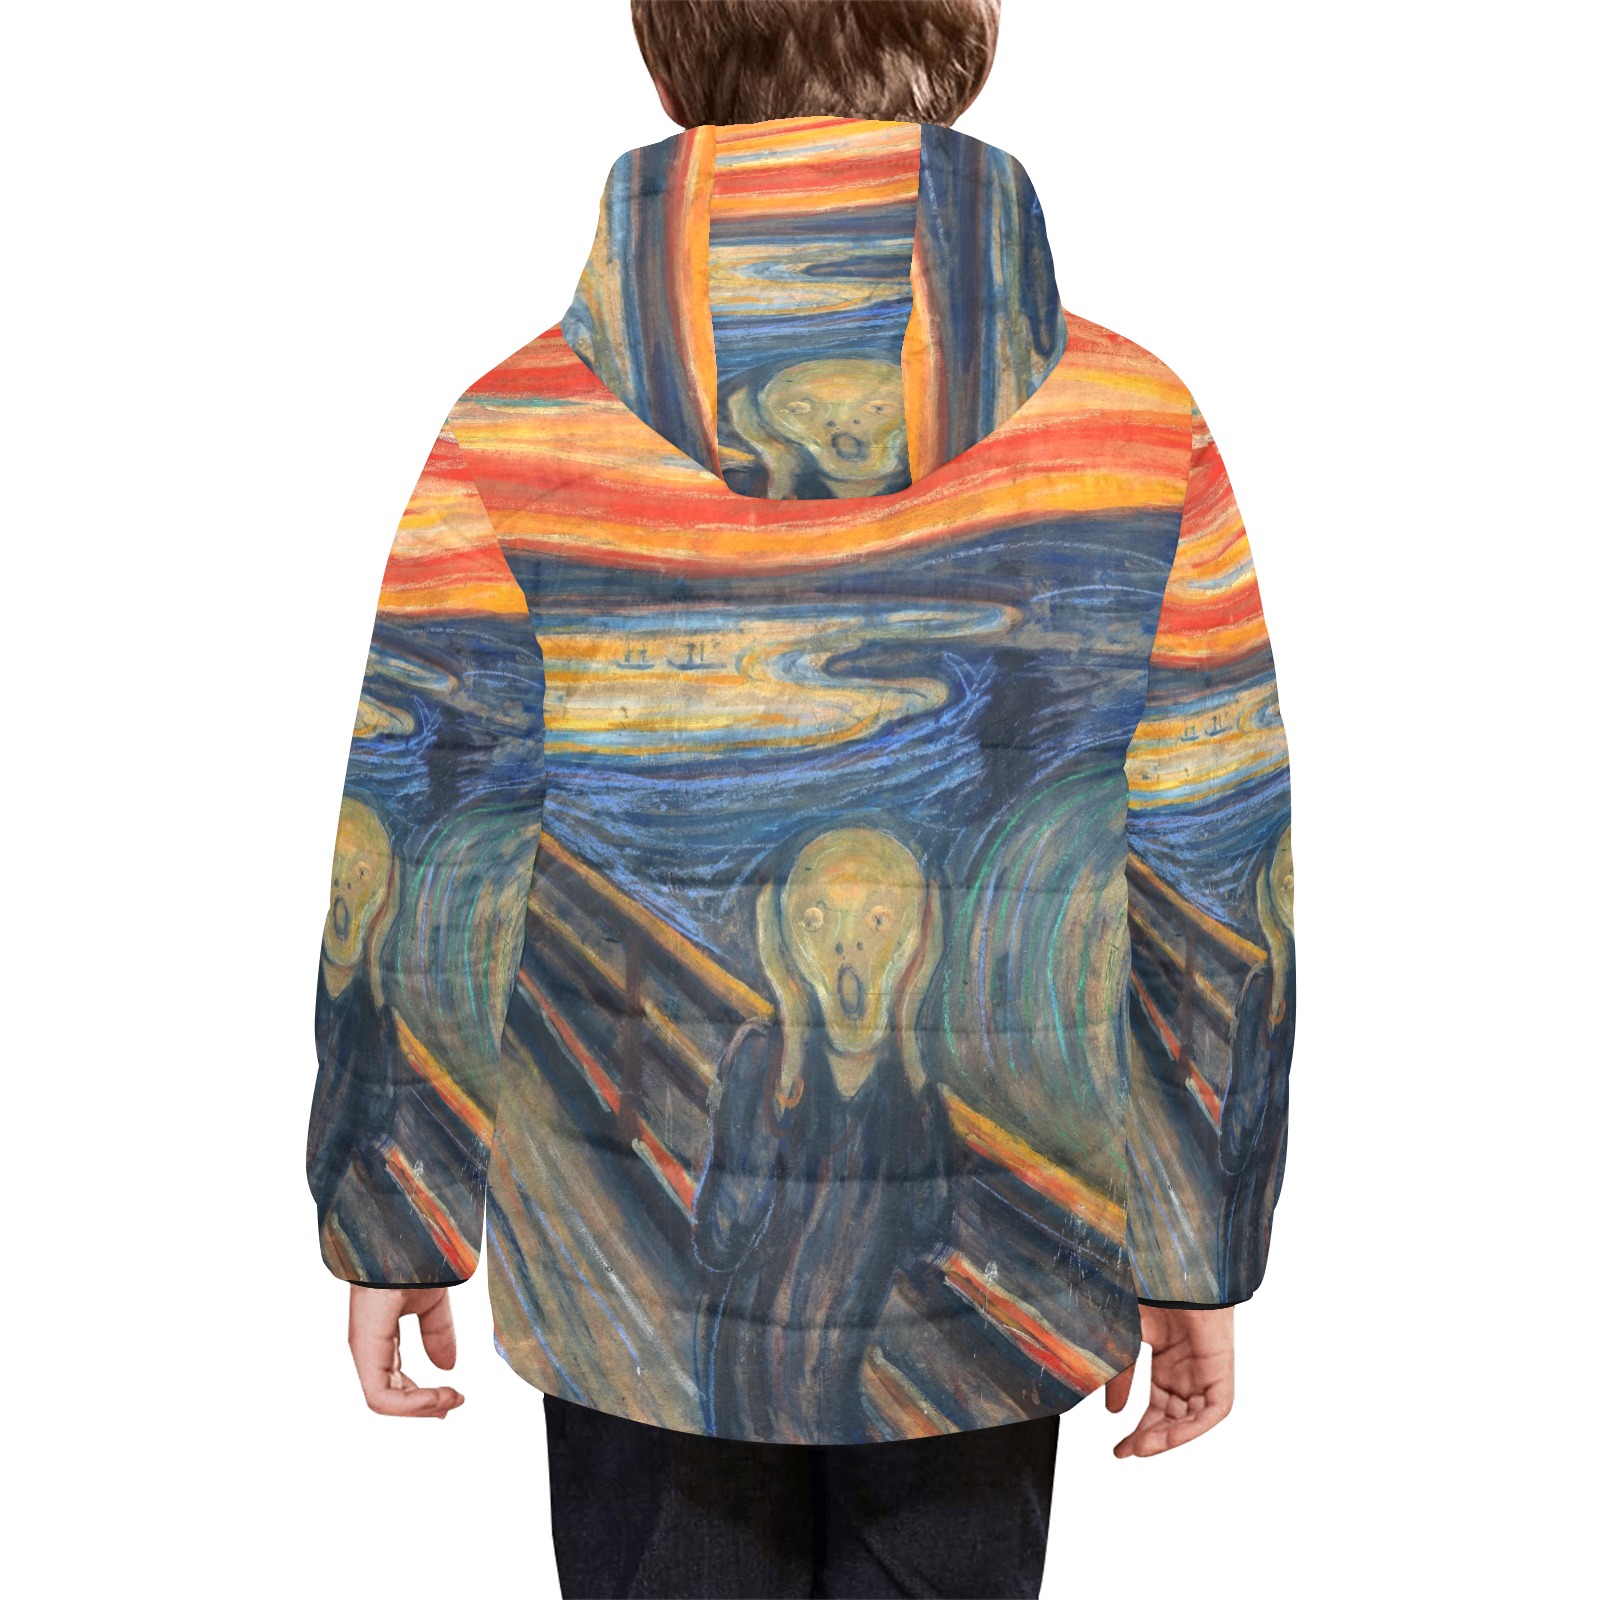 Edvard Munch-The scream Kids' Padded Hooded Jacket (Model H45)